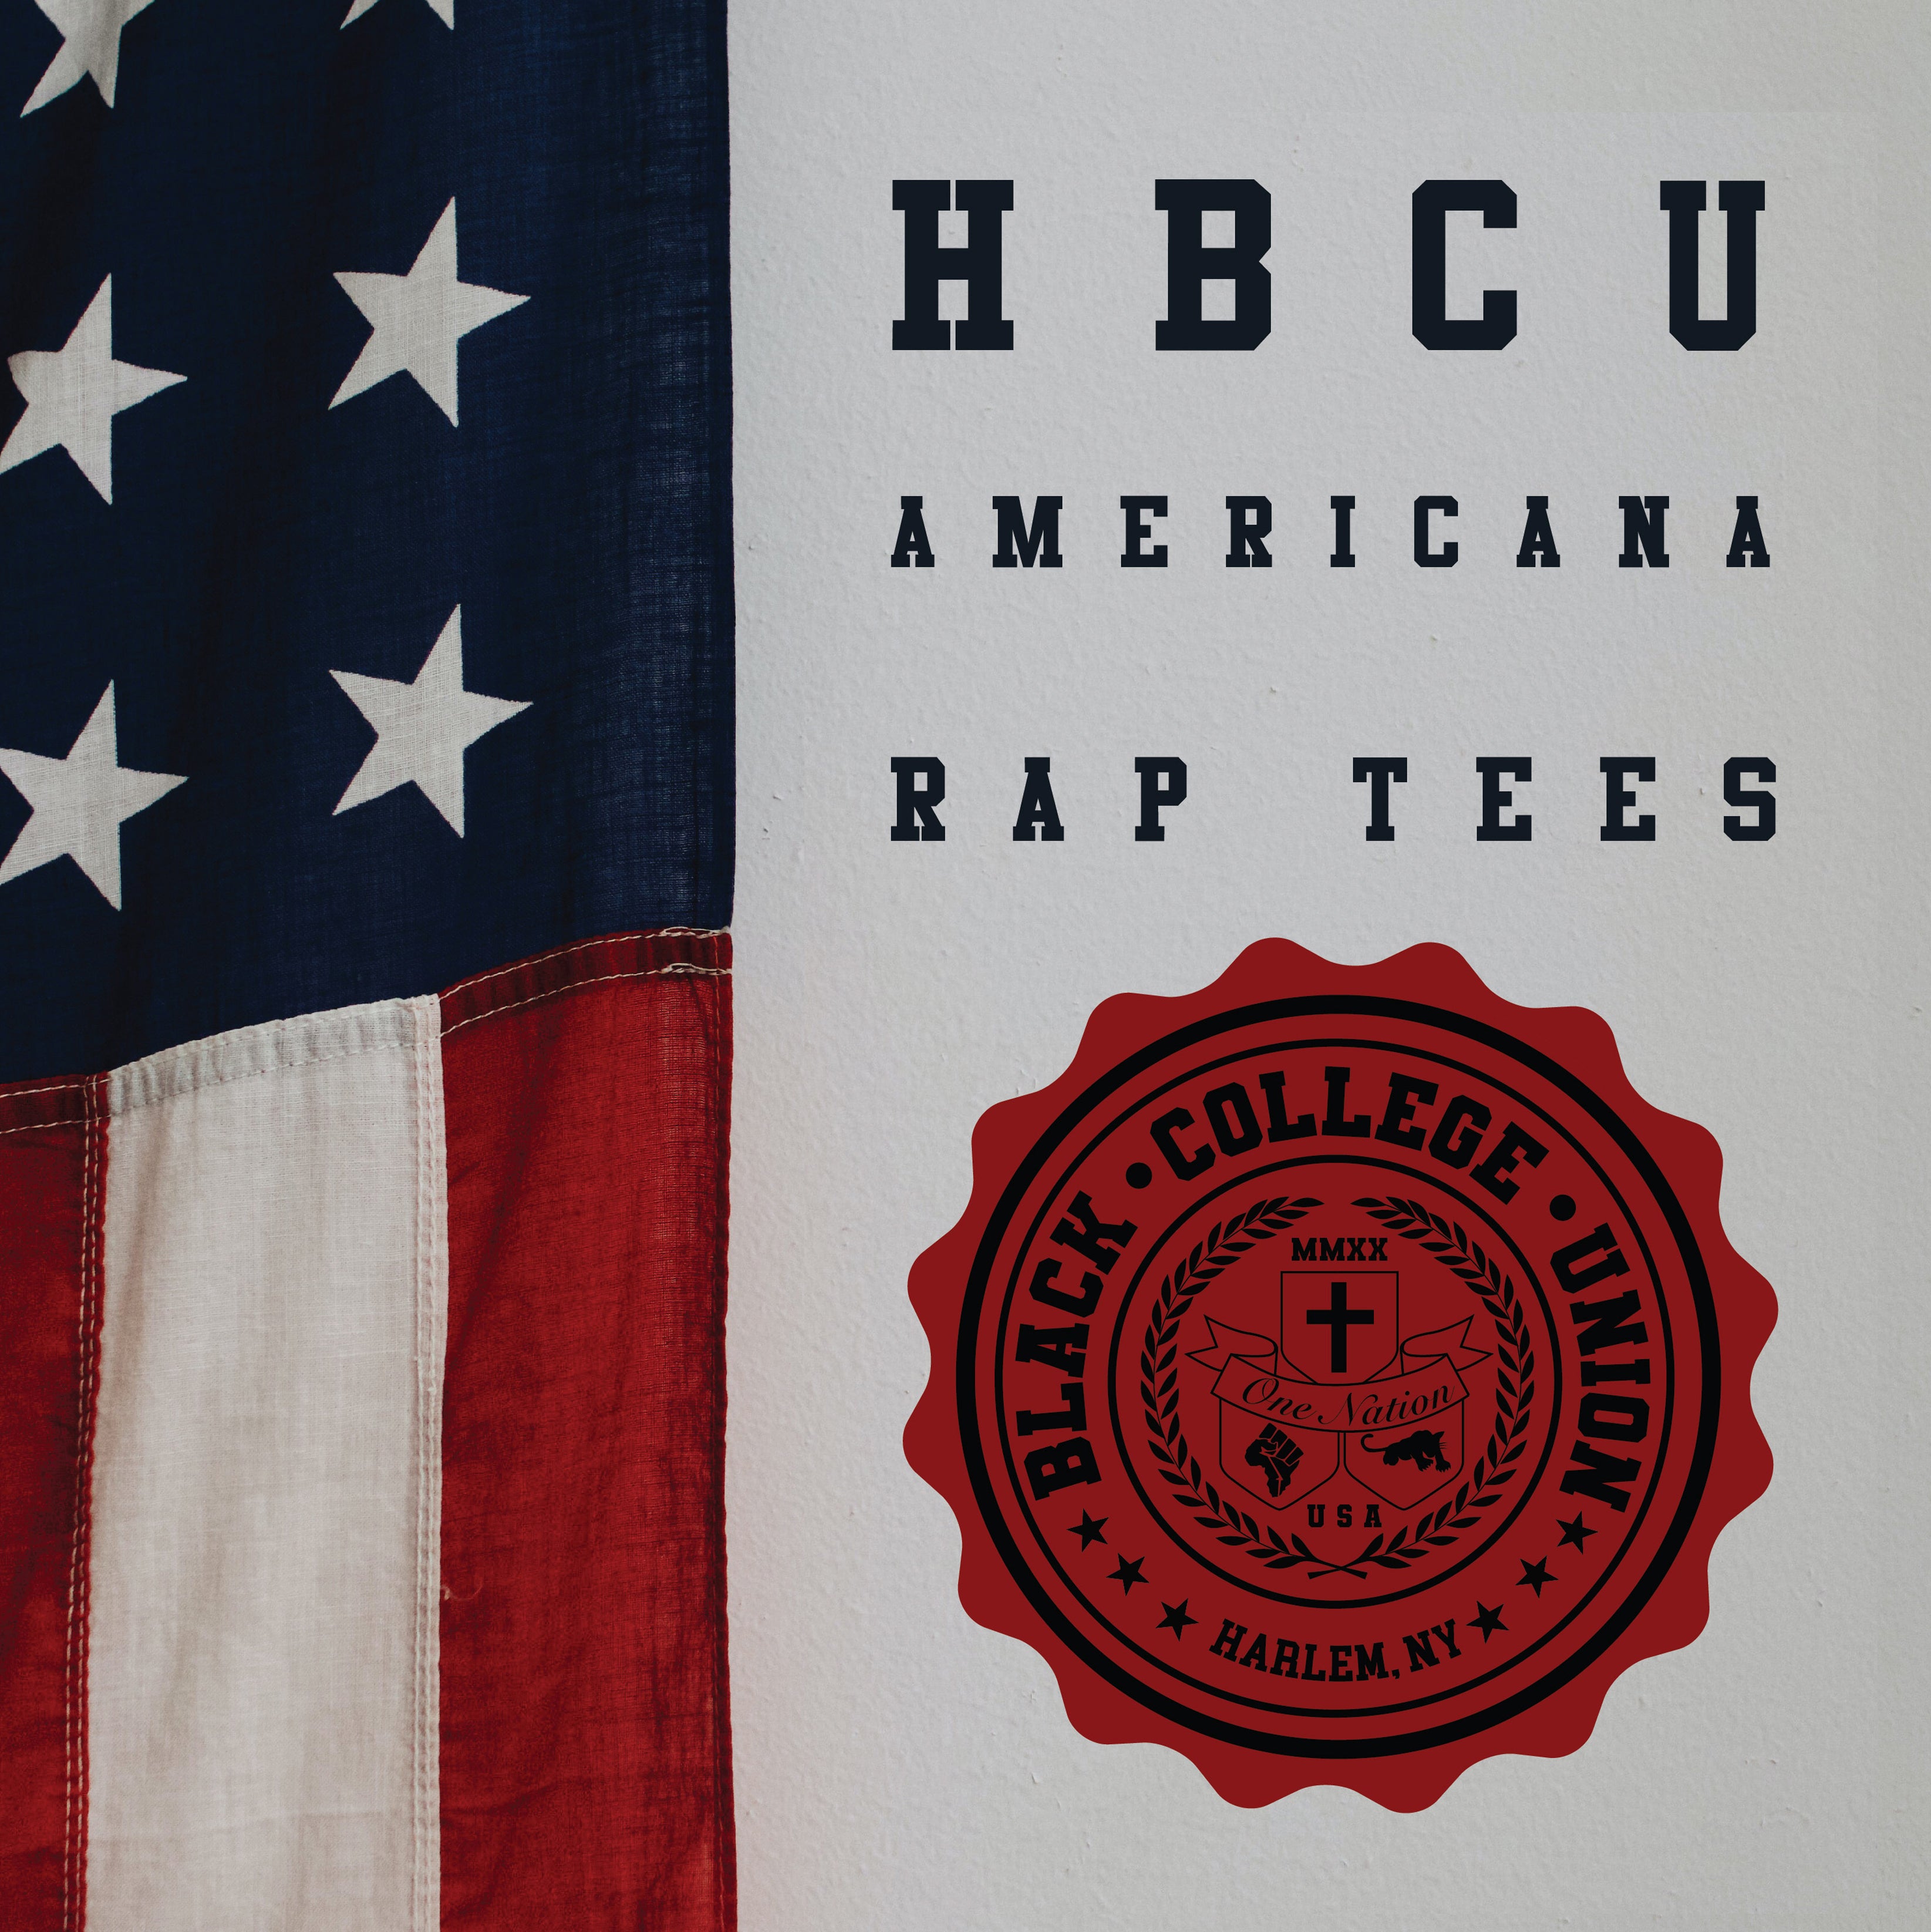 BCU X Champion Original HBCU Americana Rap Tee - Fayetteville State [FSU]